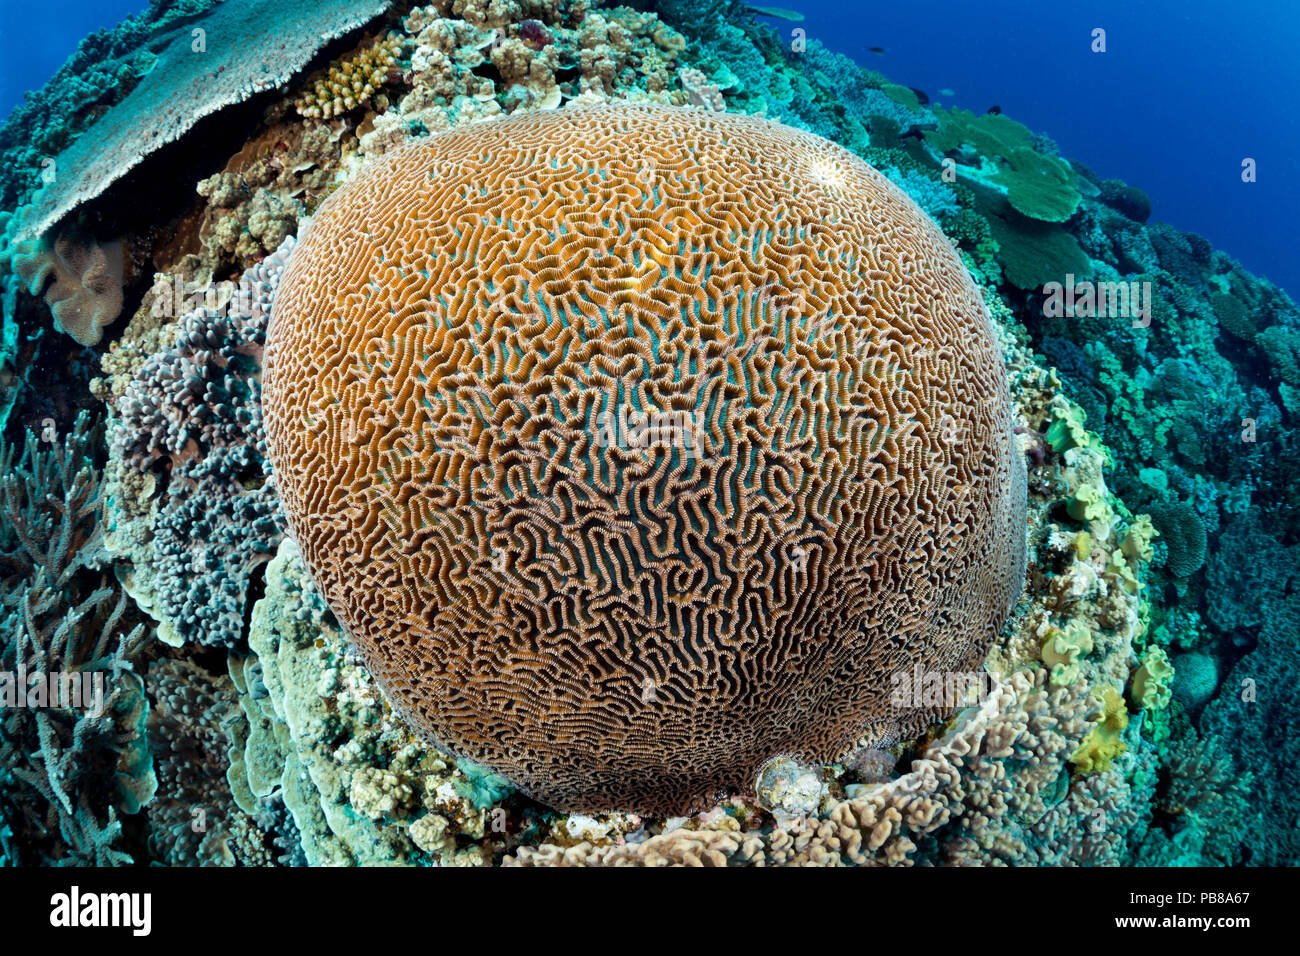 Une grande colonie de corail cerveau domine ce reef scène fidjienne. Banque D'Images